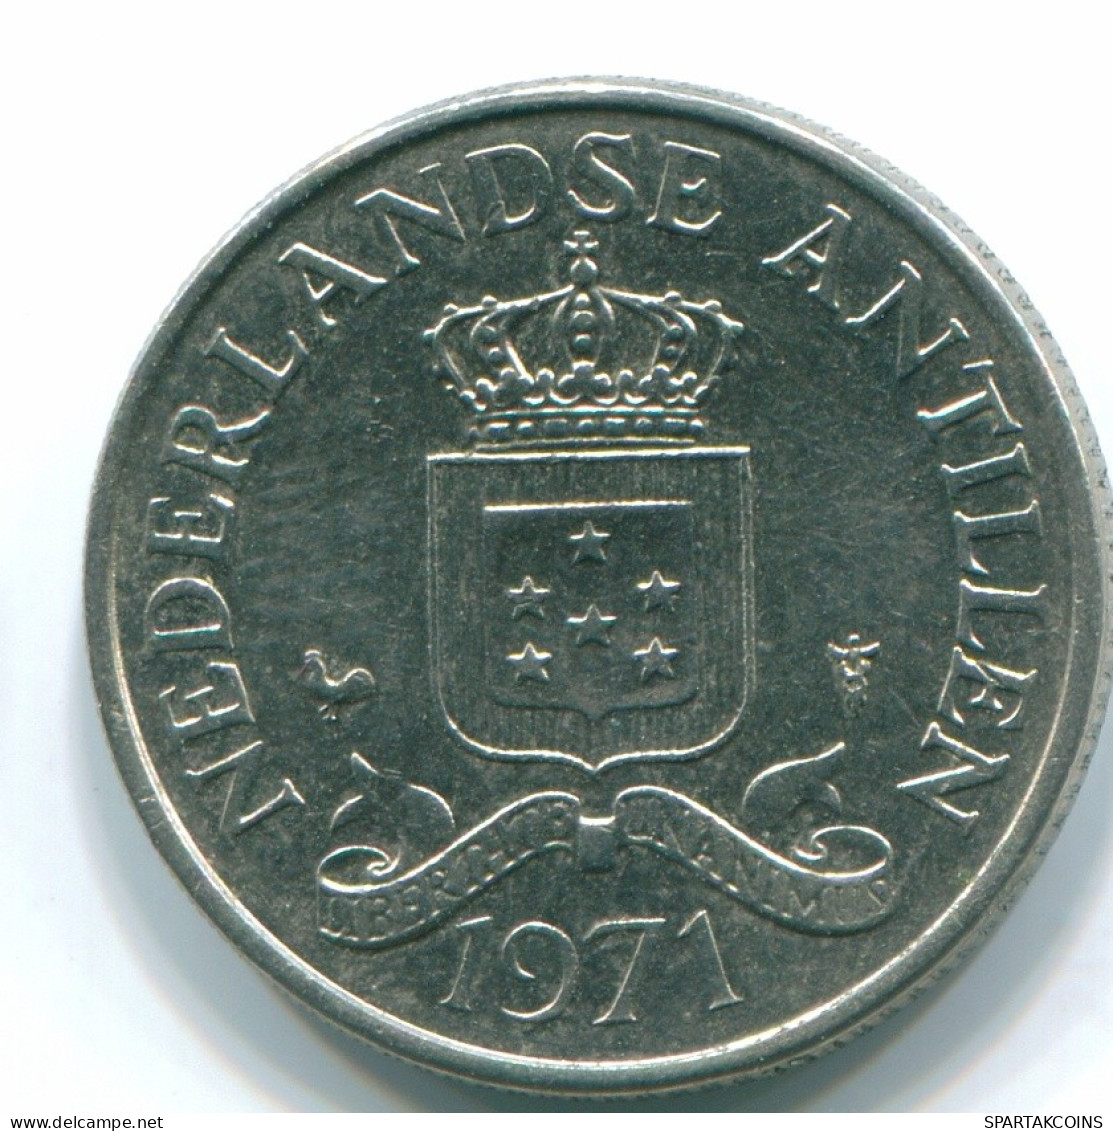 25 CENTS 1971 NIEDERLÄNDISCHE ANTILLEN Nickel Koloniale Münze #S11512.D.A - Antillas Neerlandesas